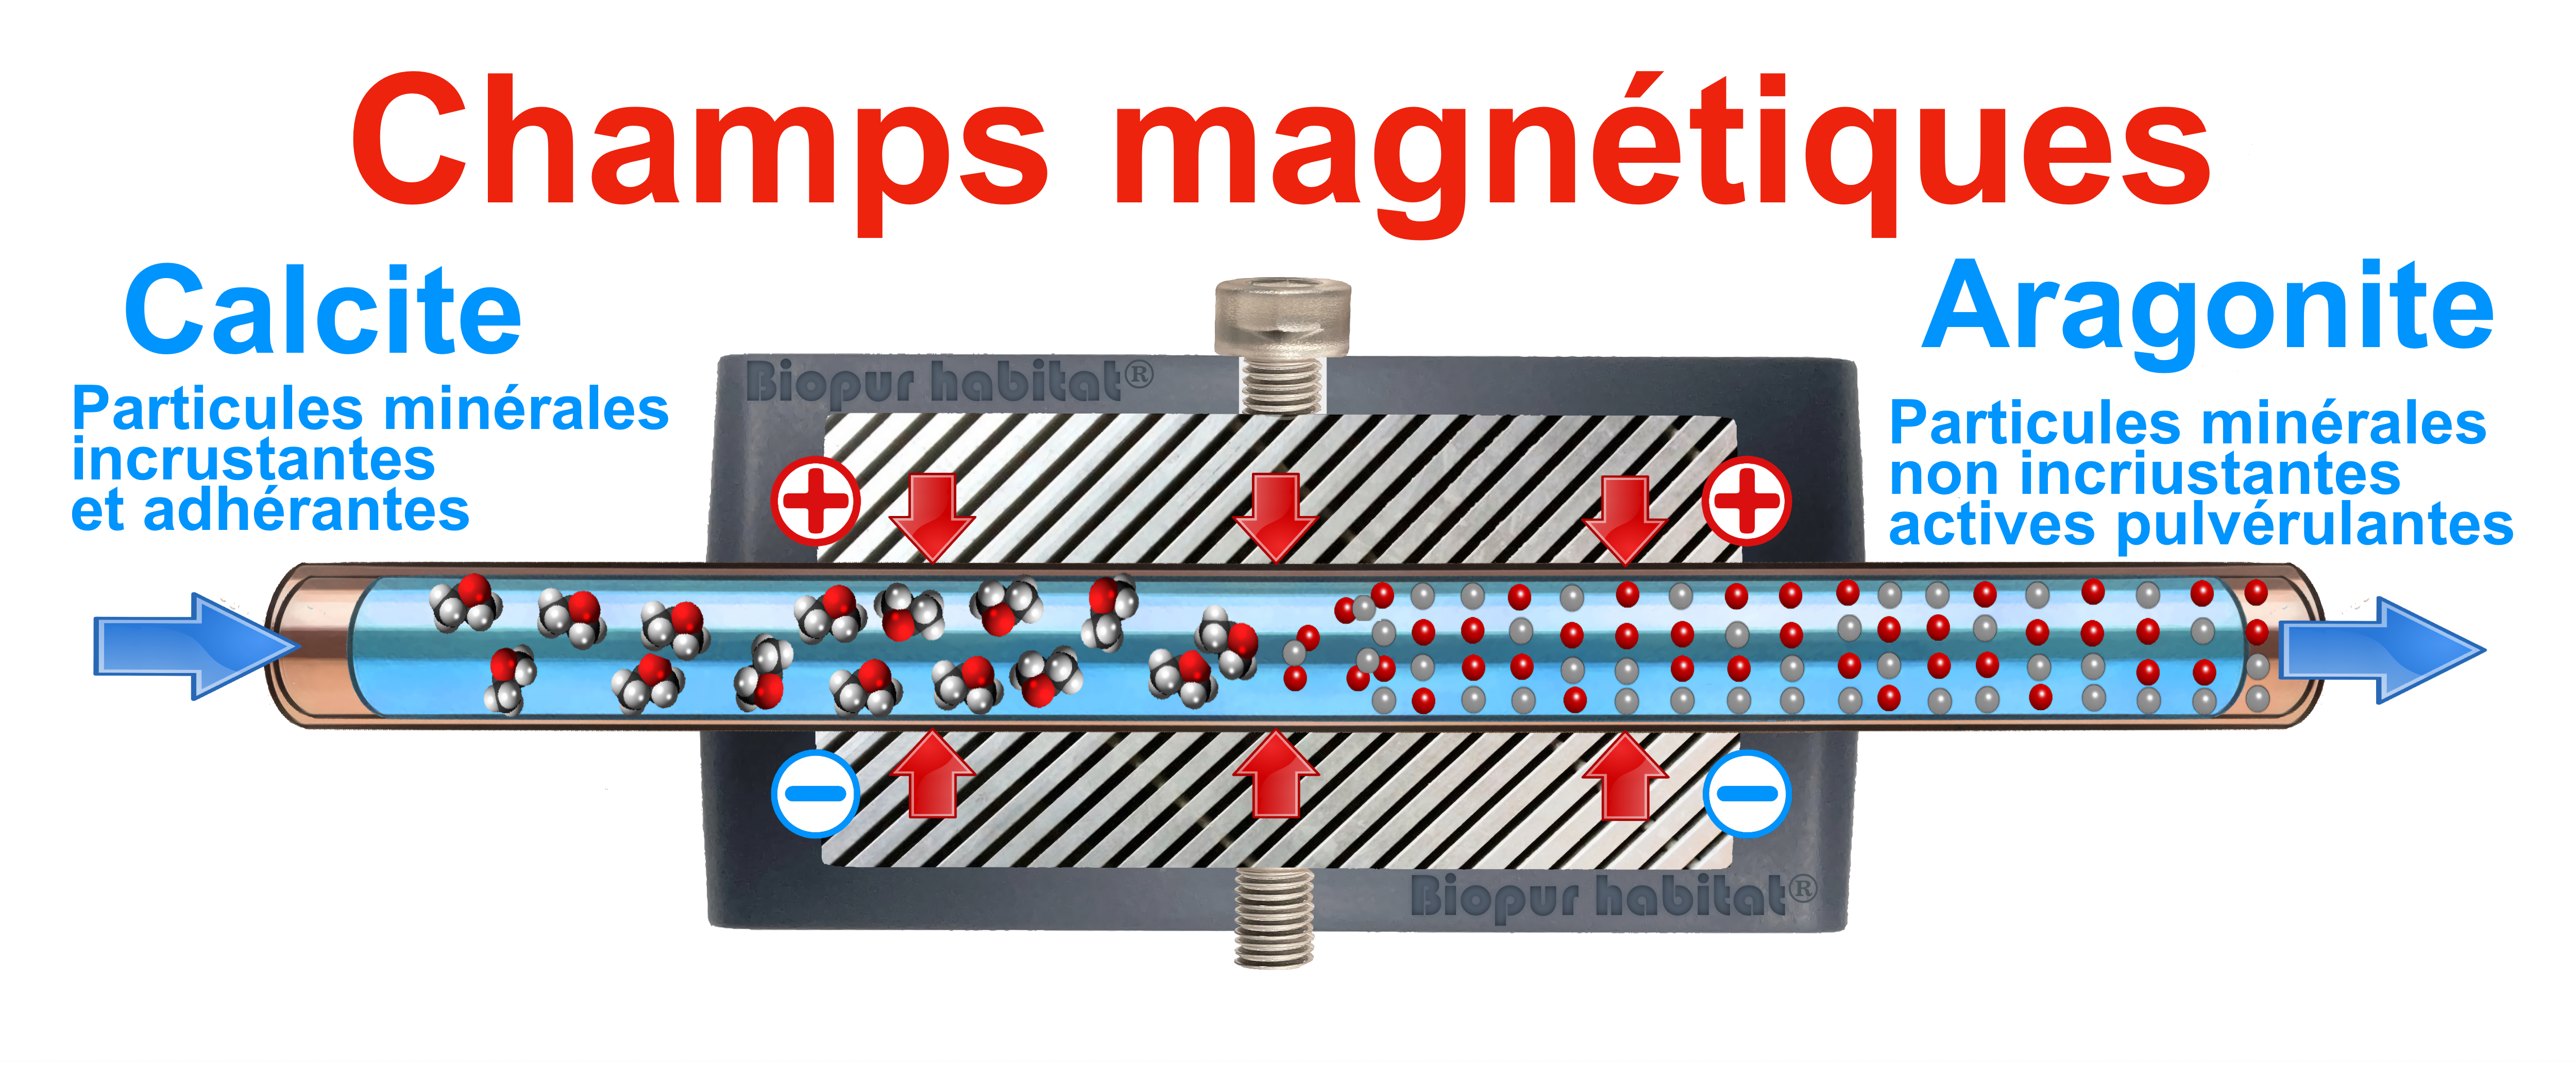 2 Anti calcaire magnétique puissant = 7500 Gauss - sans branchement  électrique